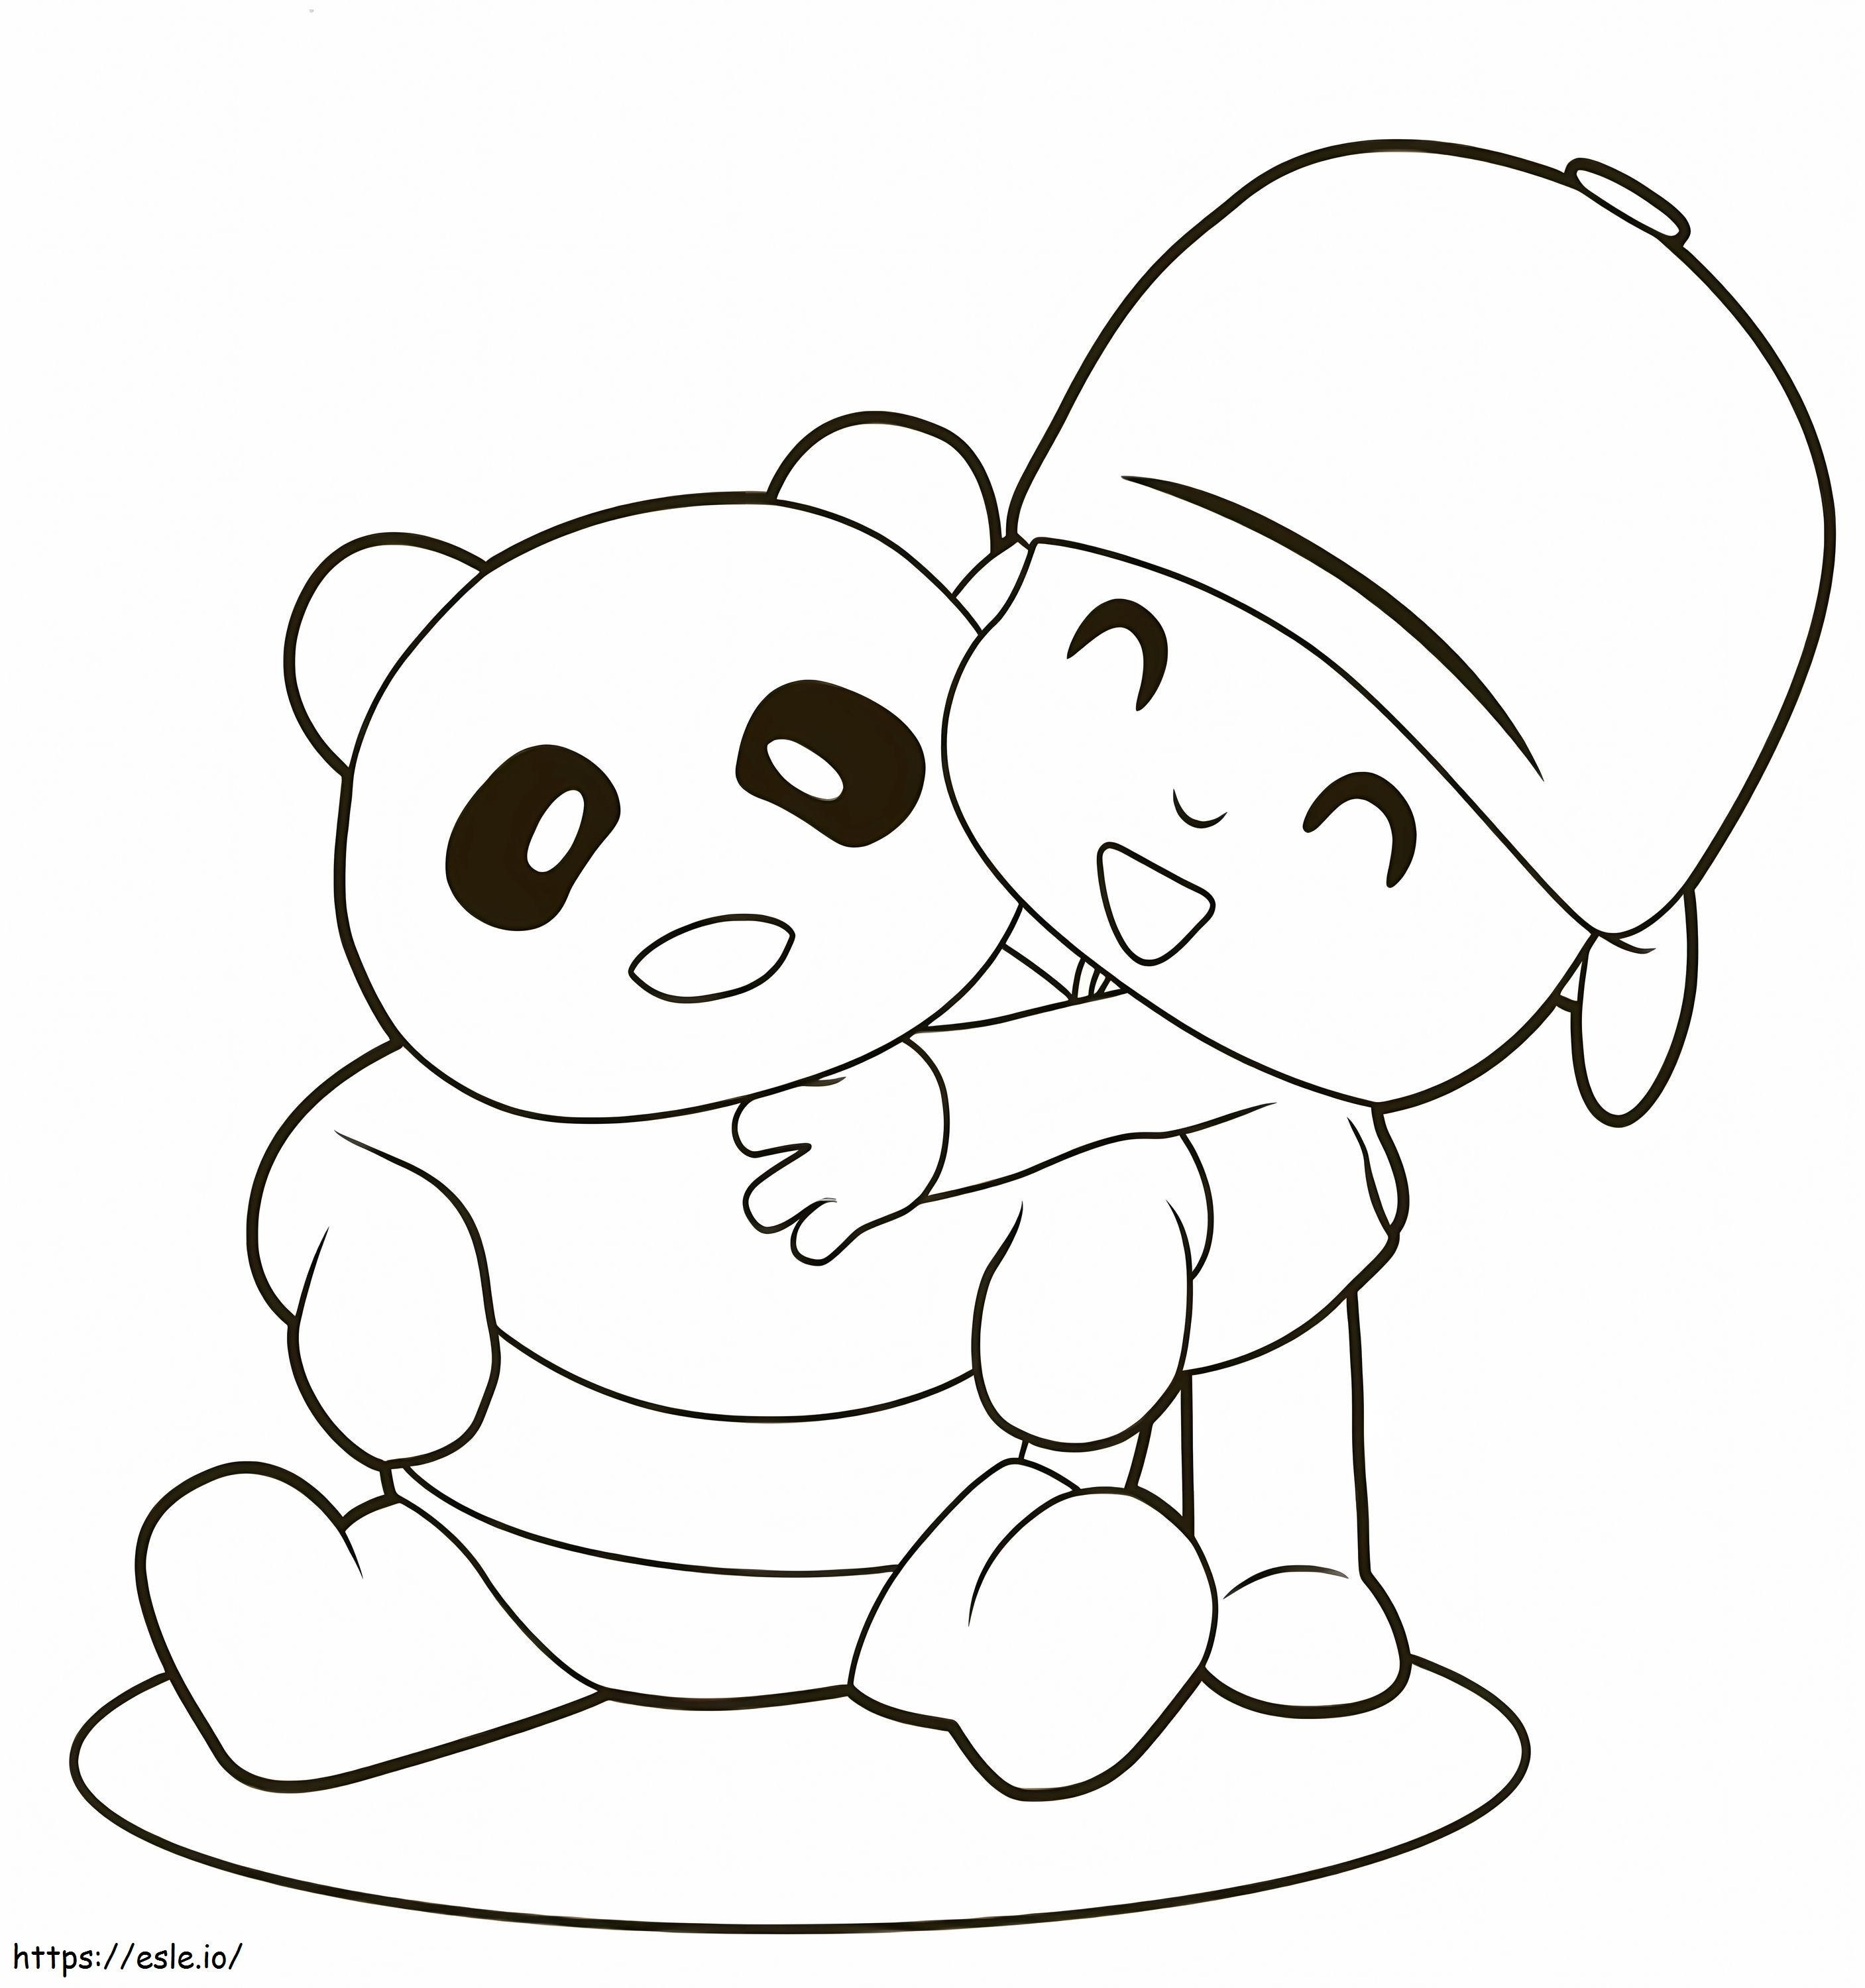 Pocoyo przytulająca pandę kolorowanka